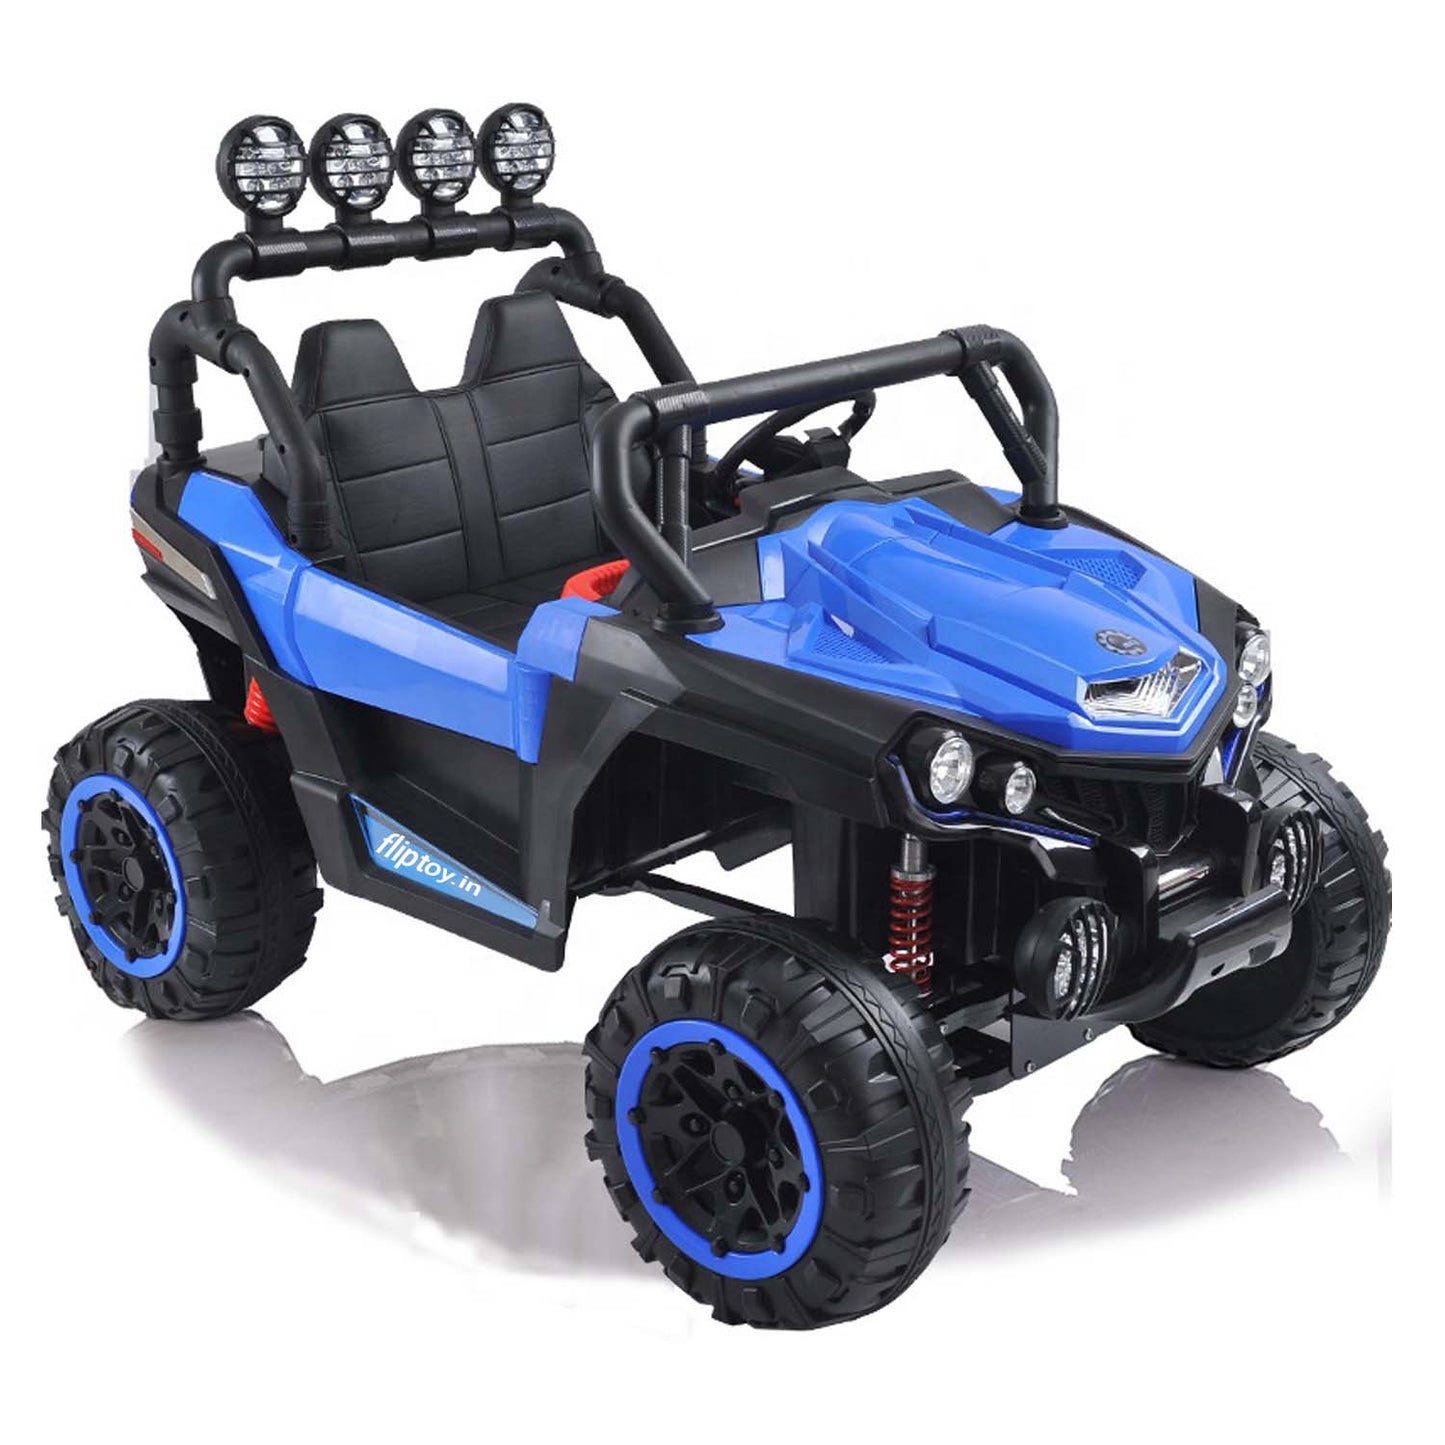 Fliptoy™ | big toys direct jeep | Kids Riding jeep |NEL- 903 Jeep